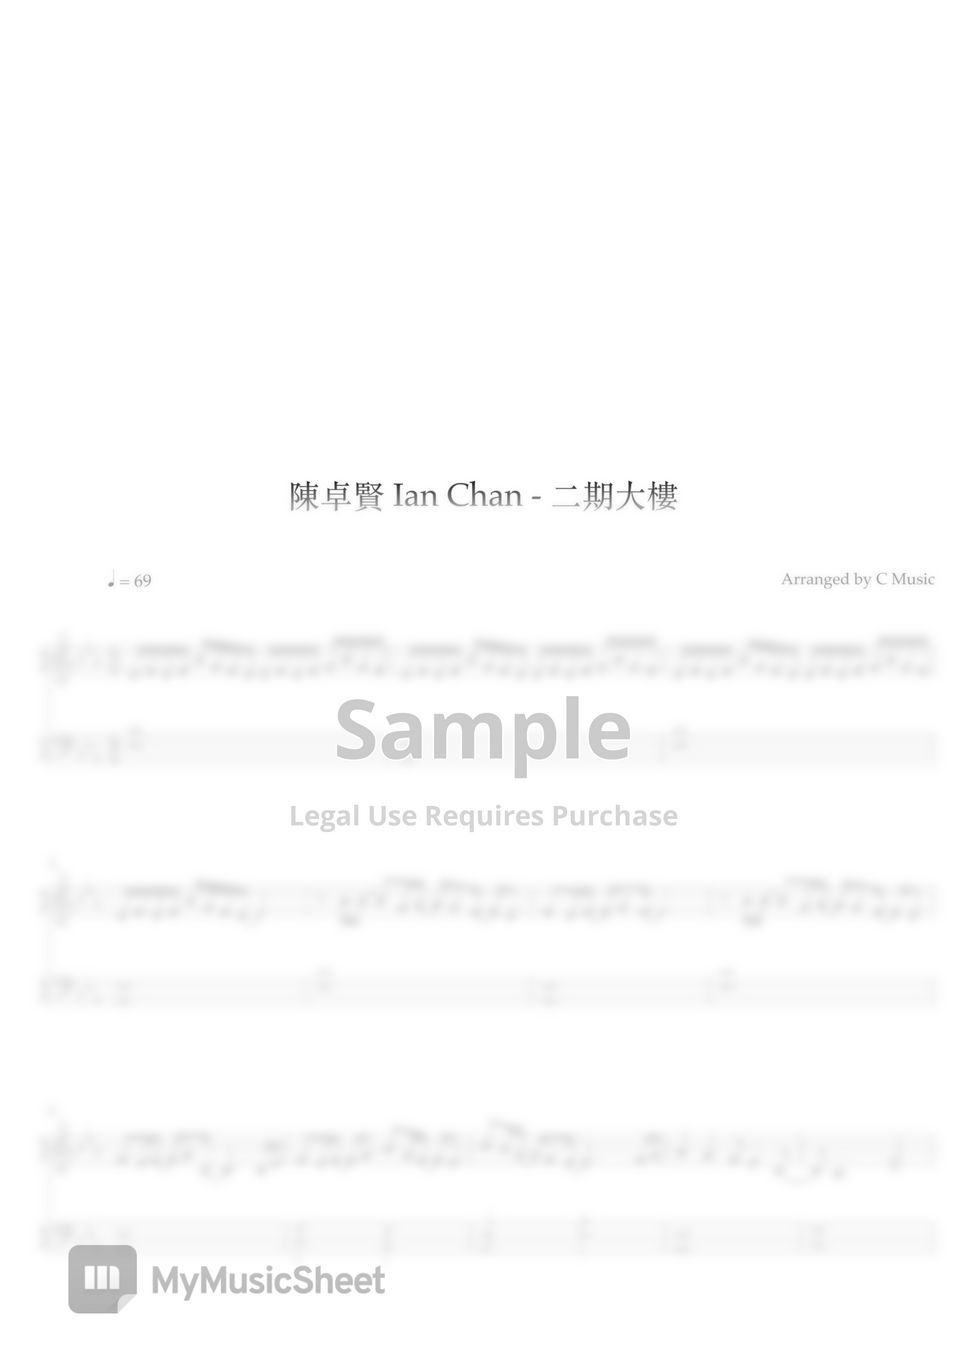 陳卓賢 Ian Chan - 二期大樓 (Easy Version) by C Music